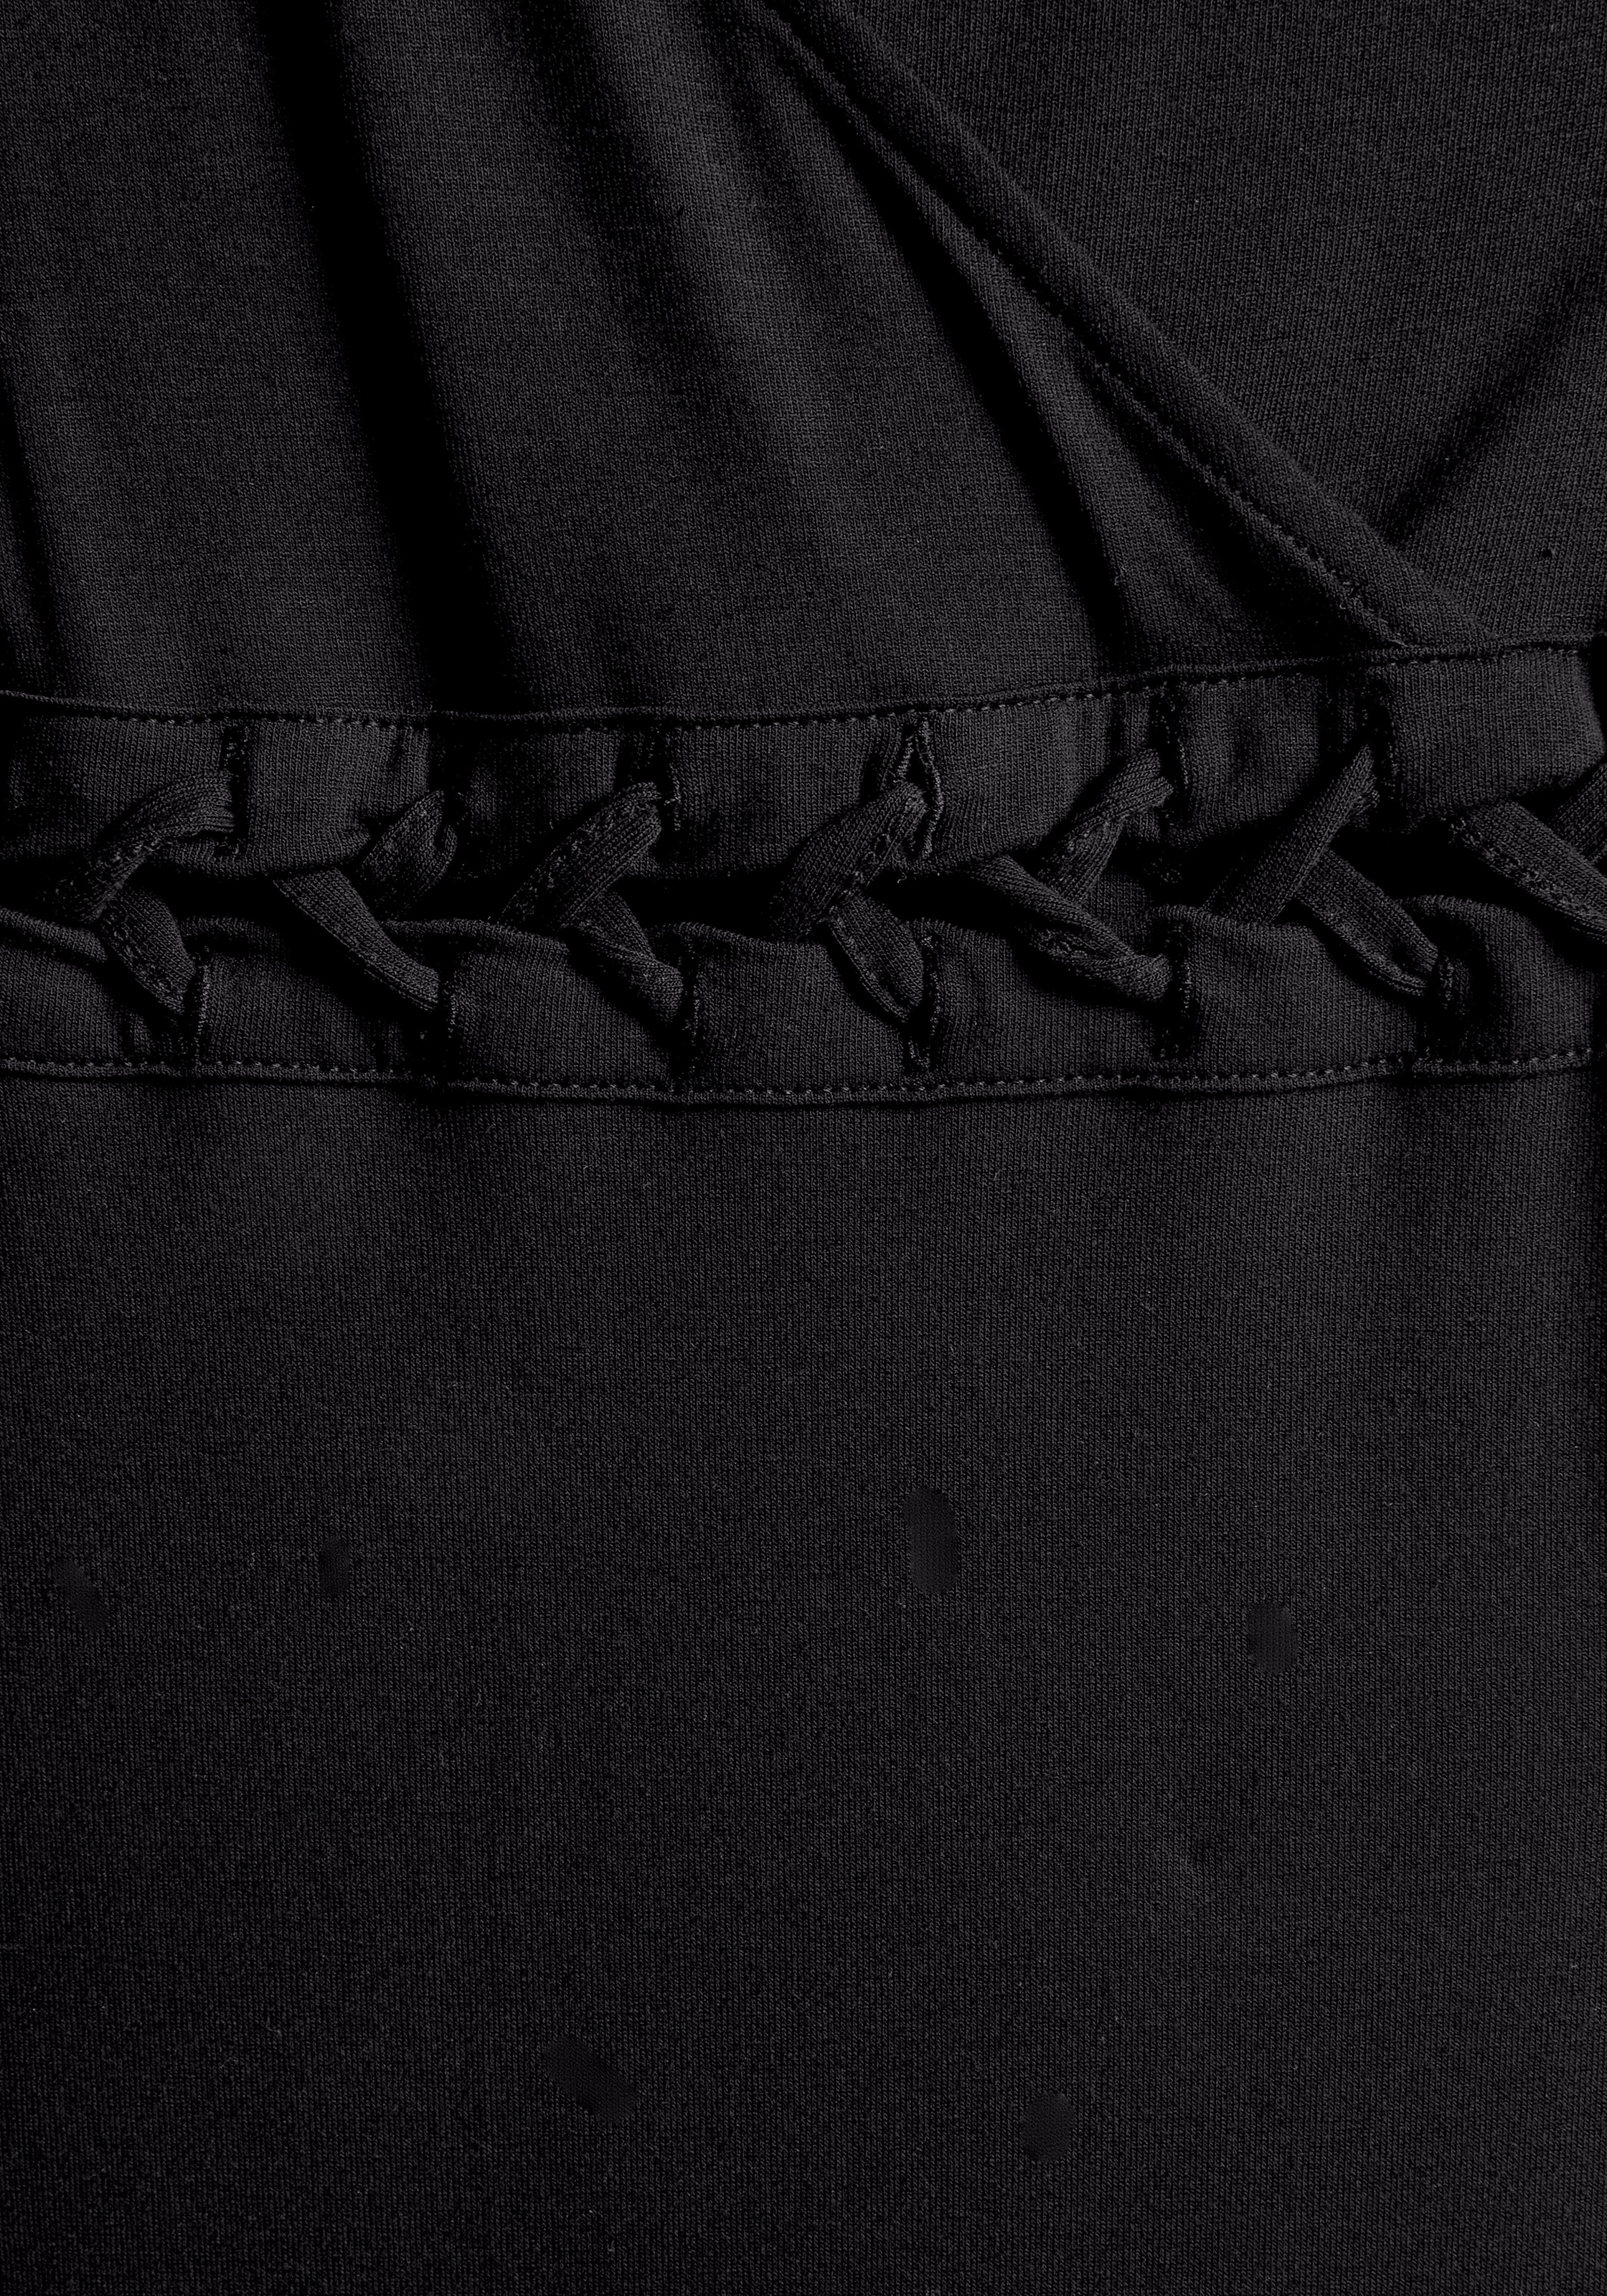 LASCANA Maxikleid, mit Schnürungsdetail in der Taille, Sommerkleid, Strandkleid